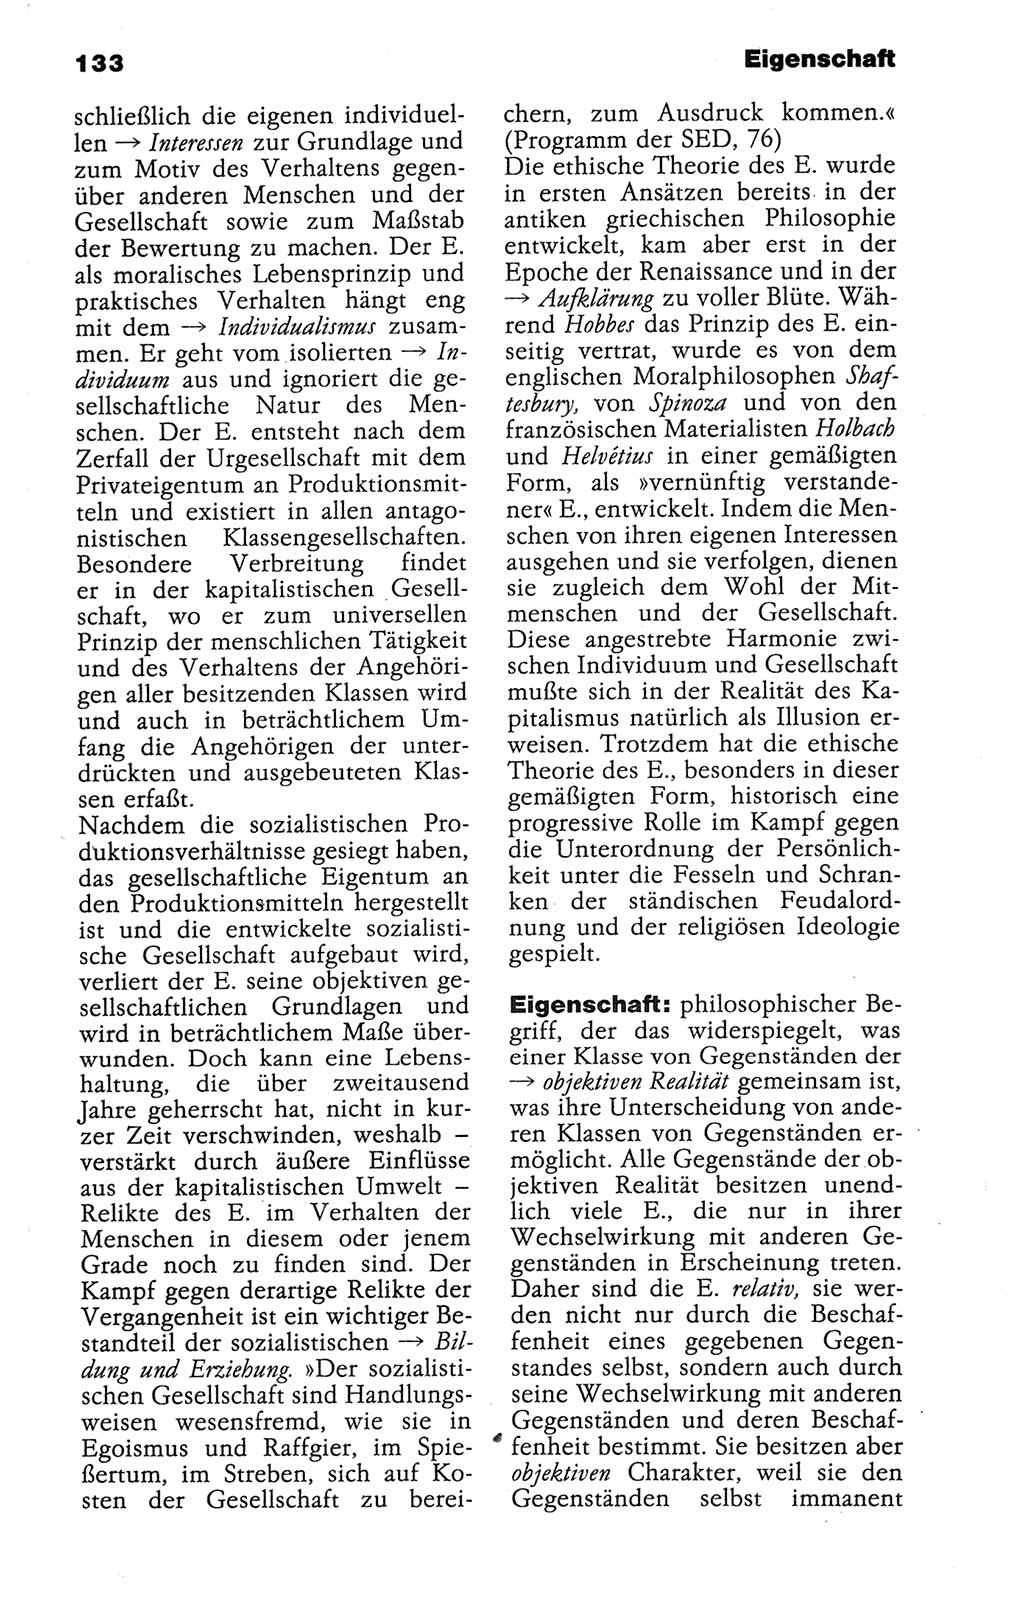 Wörterbuch der marxistisch-leninistischen Philosophie [Deutsche Demokratische Republik (DDR)] 1986, Seite 133 (Wb. ML Phil. DDR 1986, S. 133)